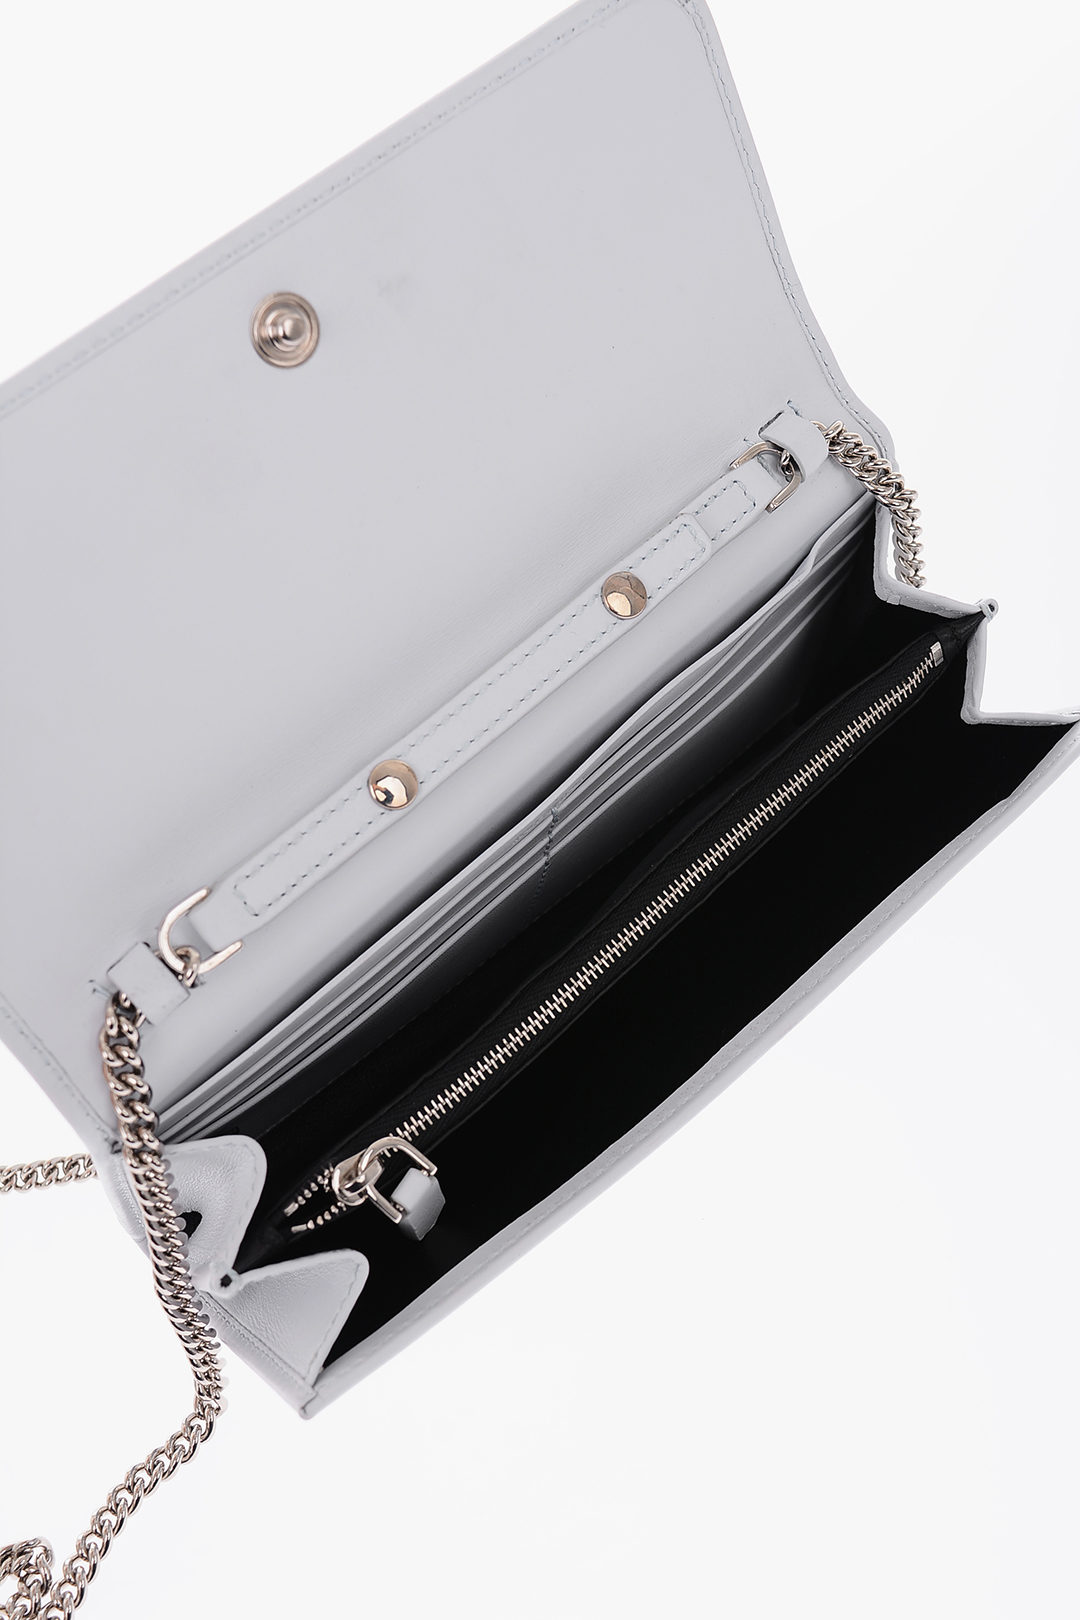 smal moeilijk tevreden te krijgen bellen Calvin Klein 205W39NYC leather wallet with chain shoulder strap women -  Glamood Outlet